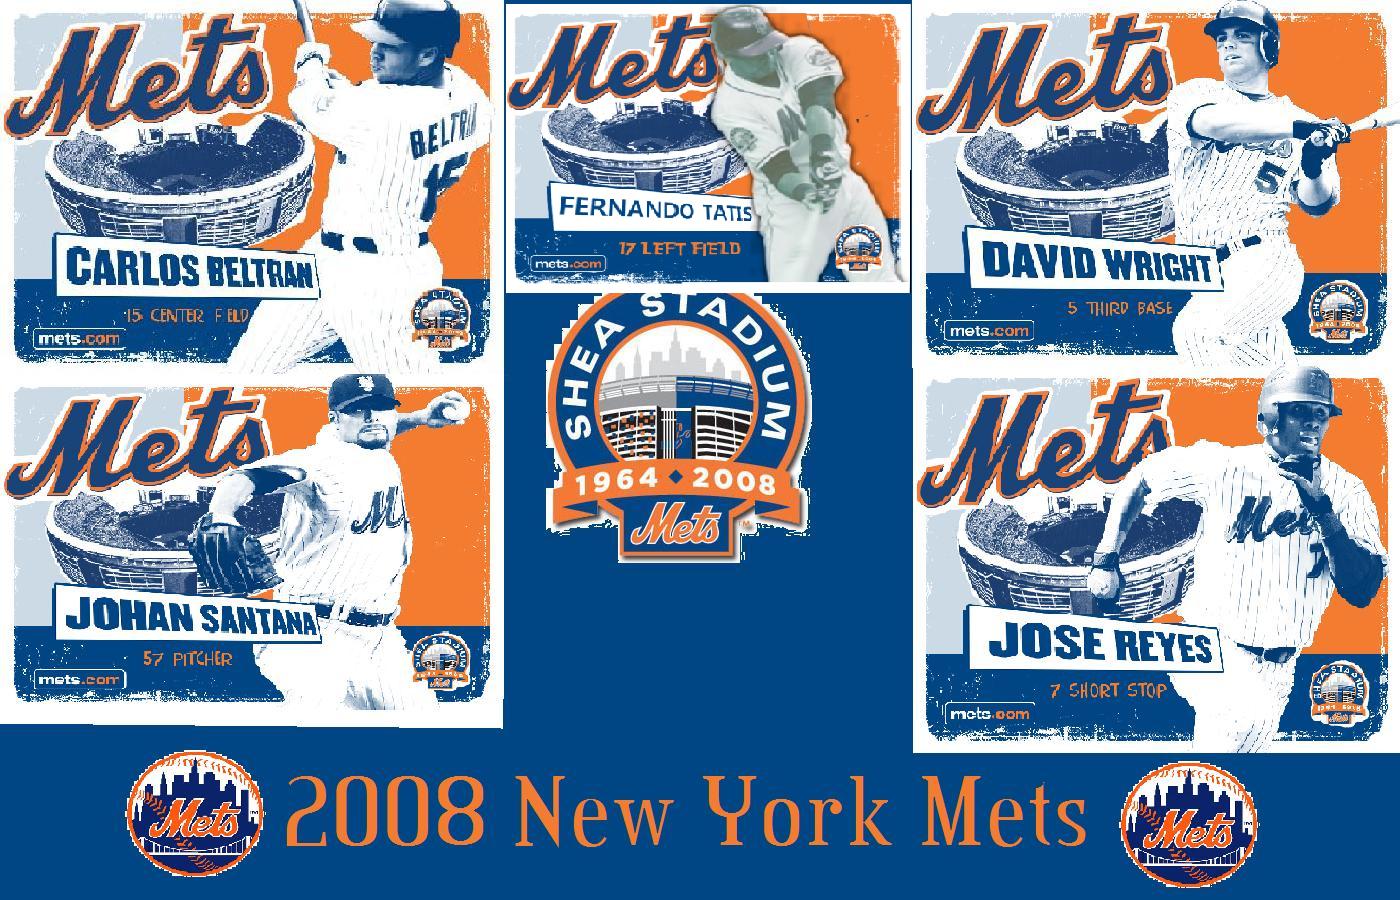 2008 New York Mets desktop wallpaper 1440 x 900 « Mets 24/7